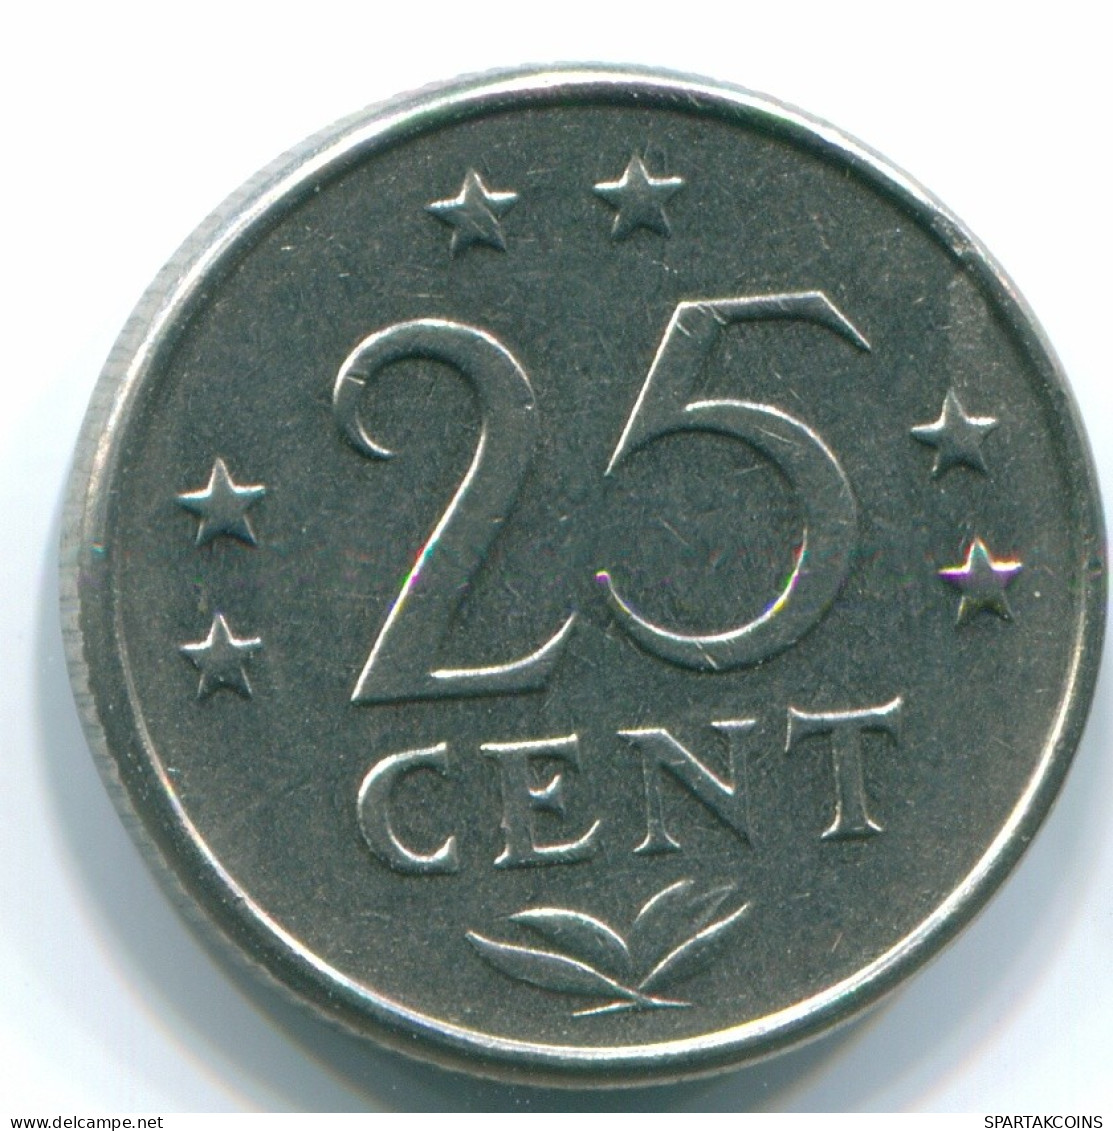 25 CENTS 1970 NETHERLANDS ANTILLES Nickel Colonial Coin #S11469.U.A - Niederländische Antillen